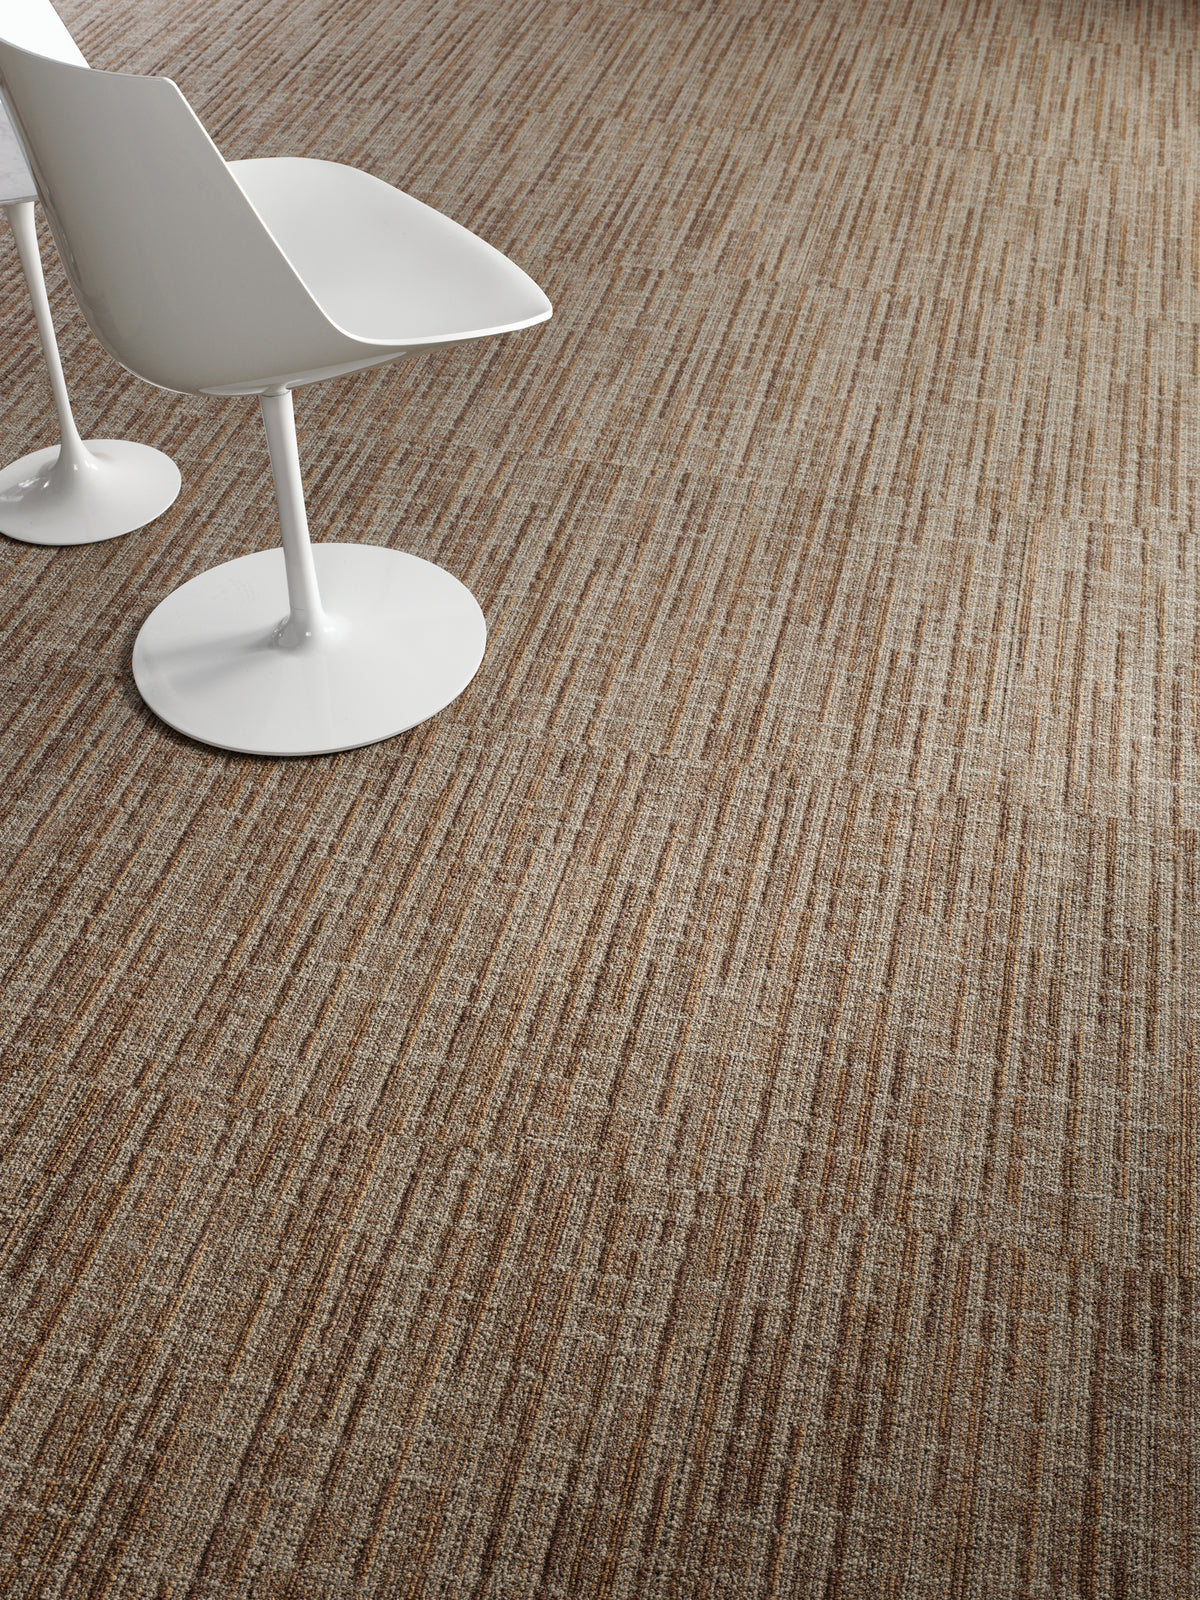 Mohawk Group - Mind Over Matter - Forward Vision - Commercial Carpet Tile - Talent